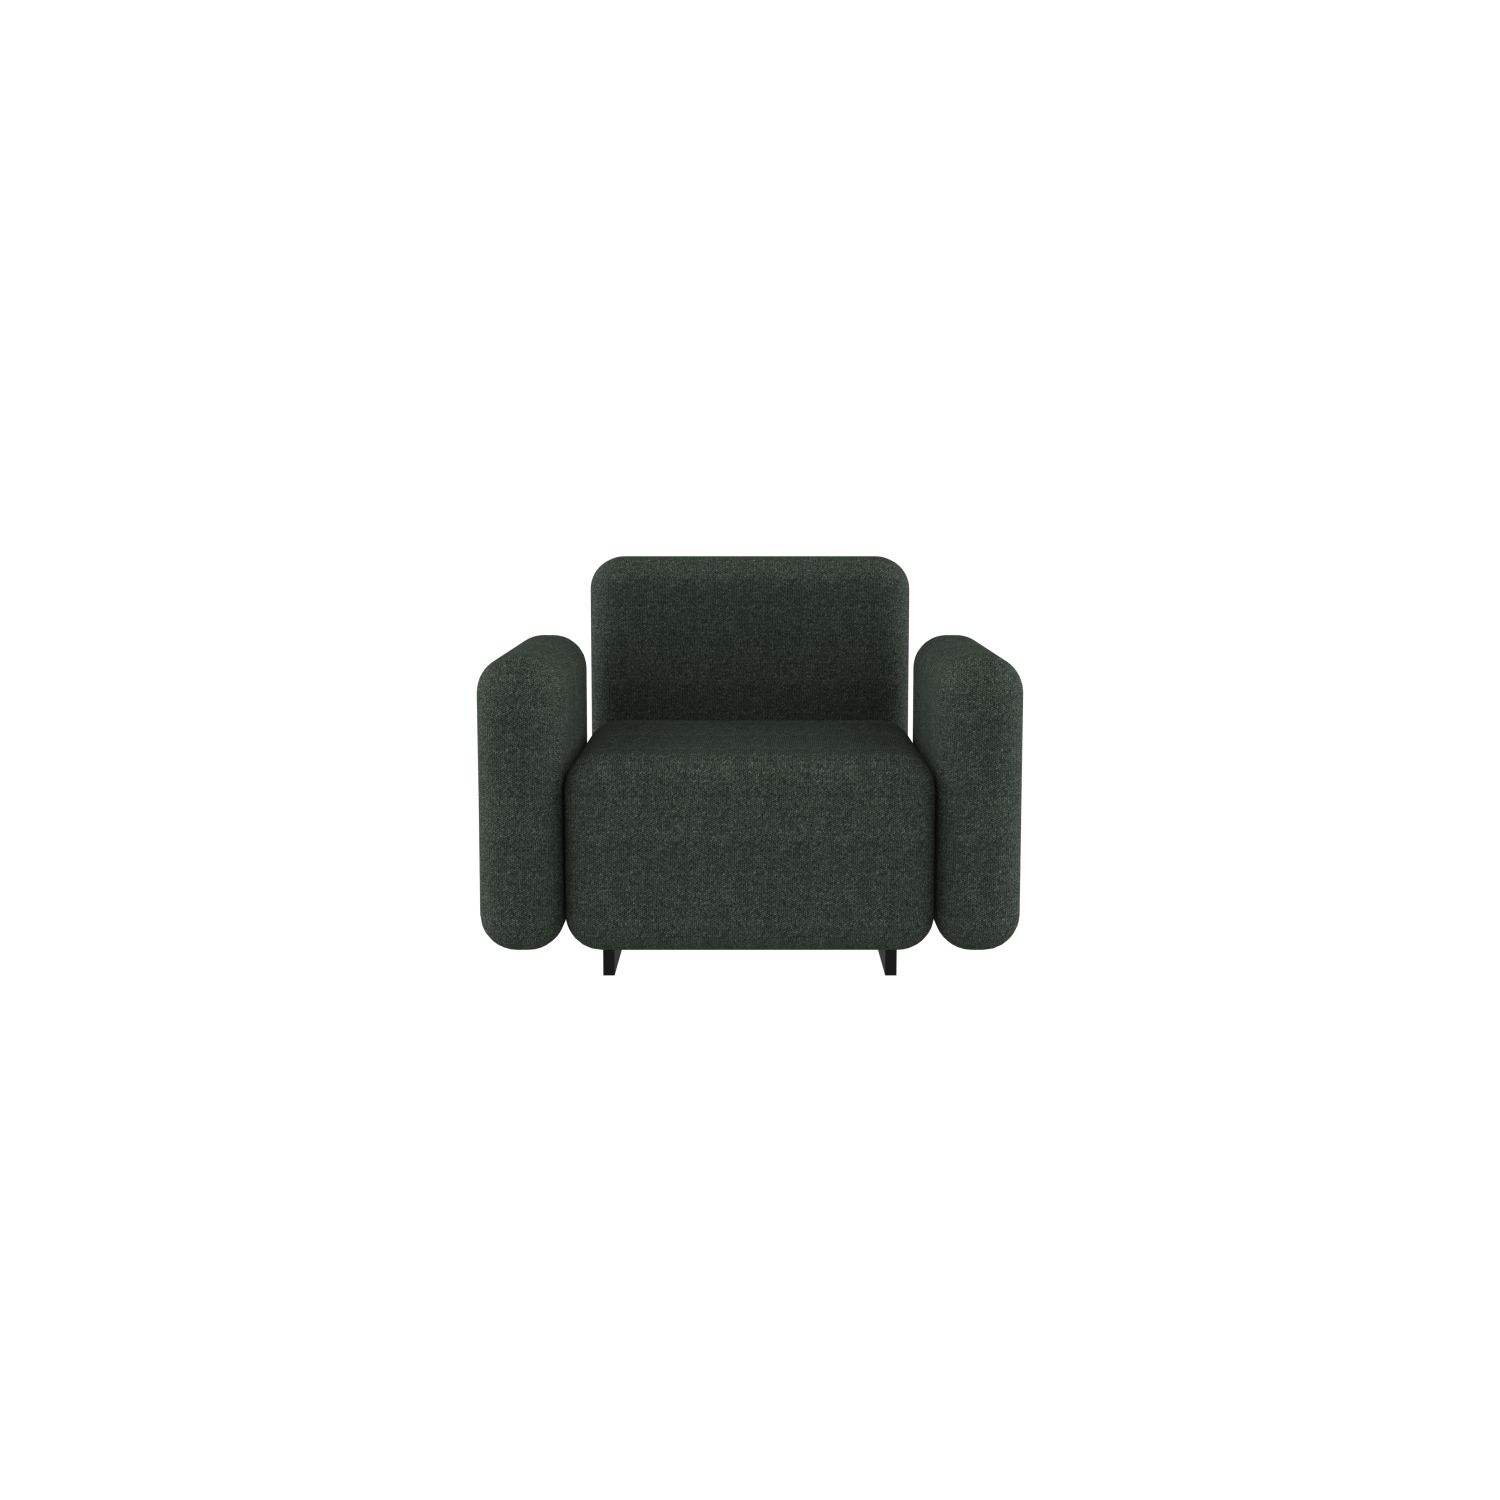 lensvelt fabio novembre balance armchair with armrest moss summer green 38 black ral9005